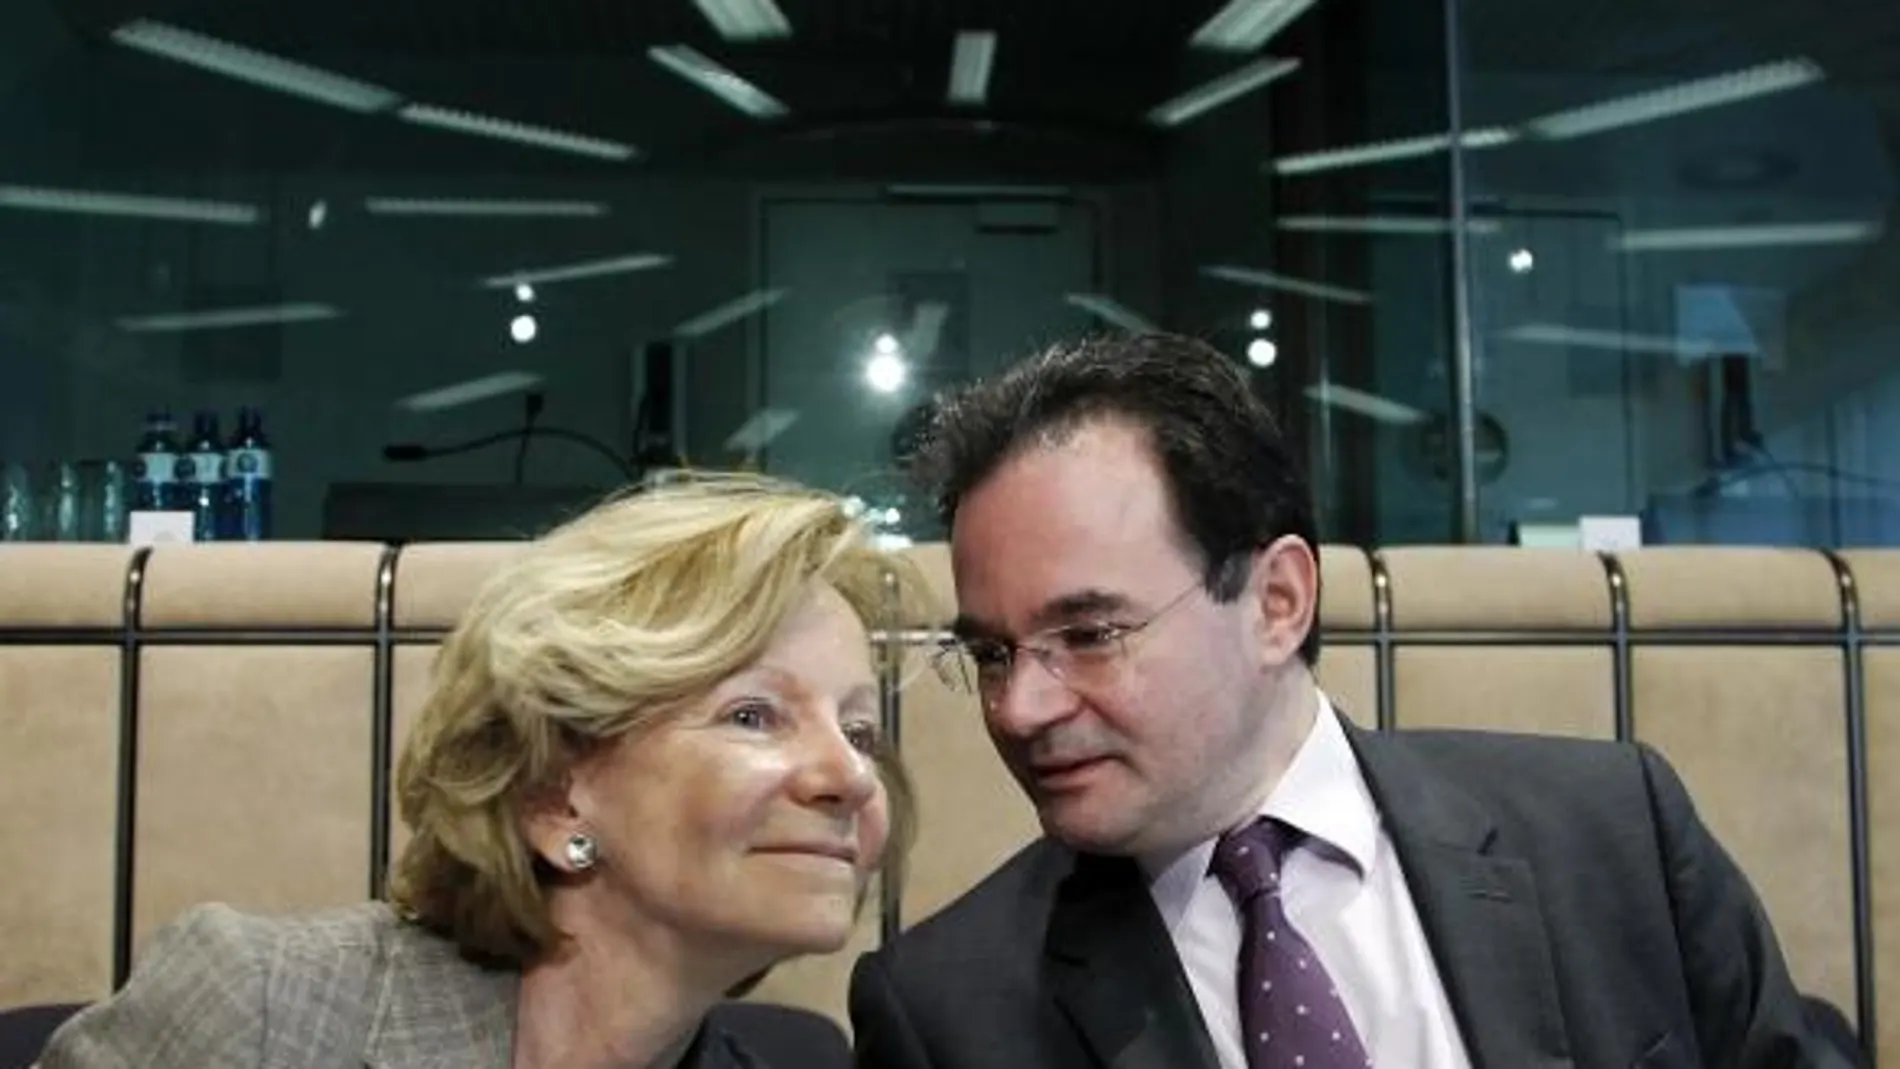 La ministra española de Economía y Hacienda, Elena Salgadoy el ministro griego de Finanzas, George Papakonstantinou